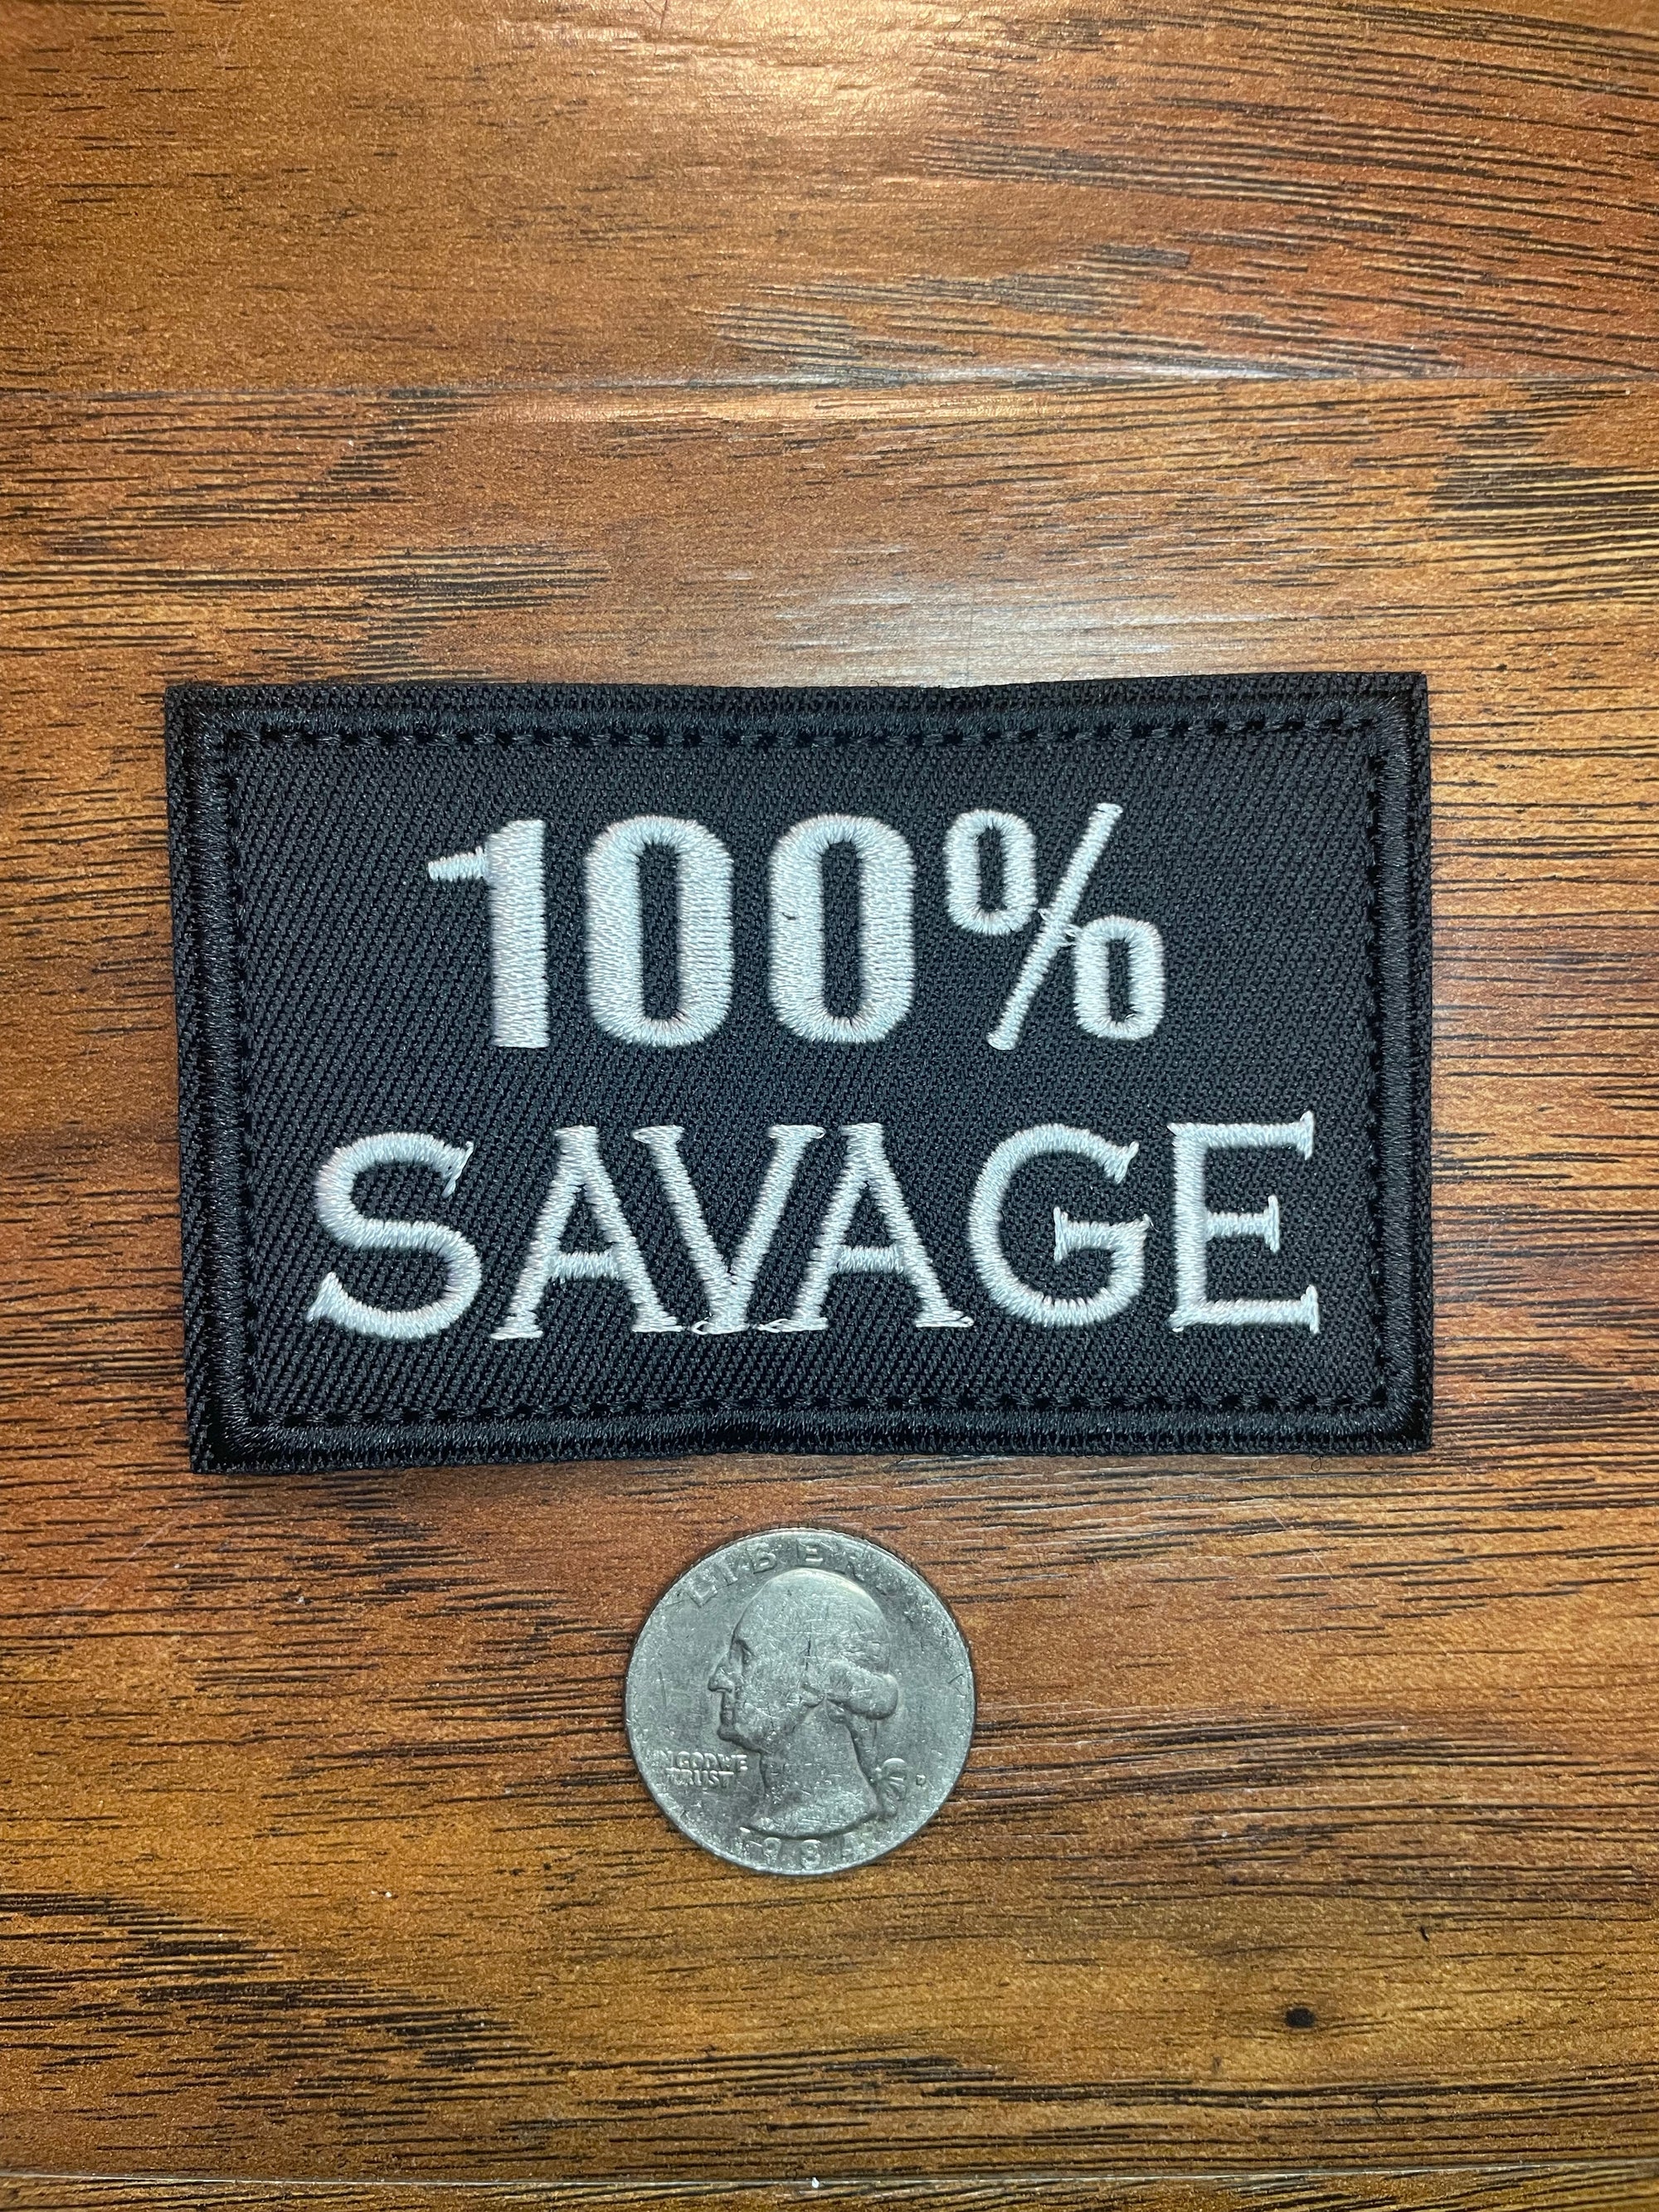 100% Savage